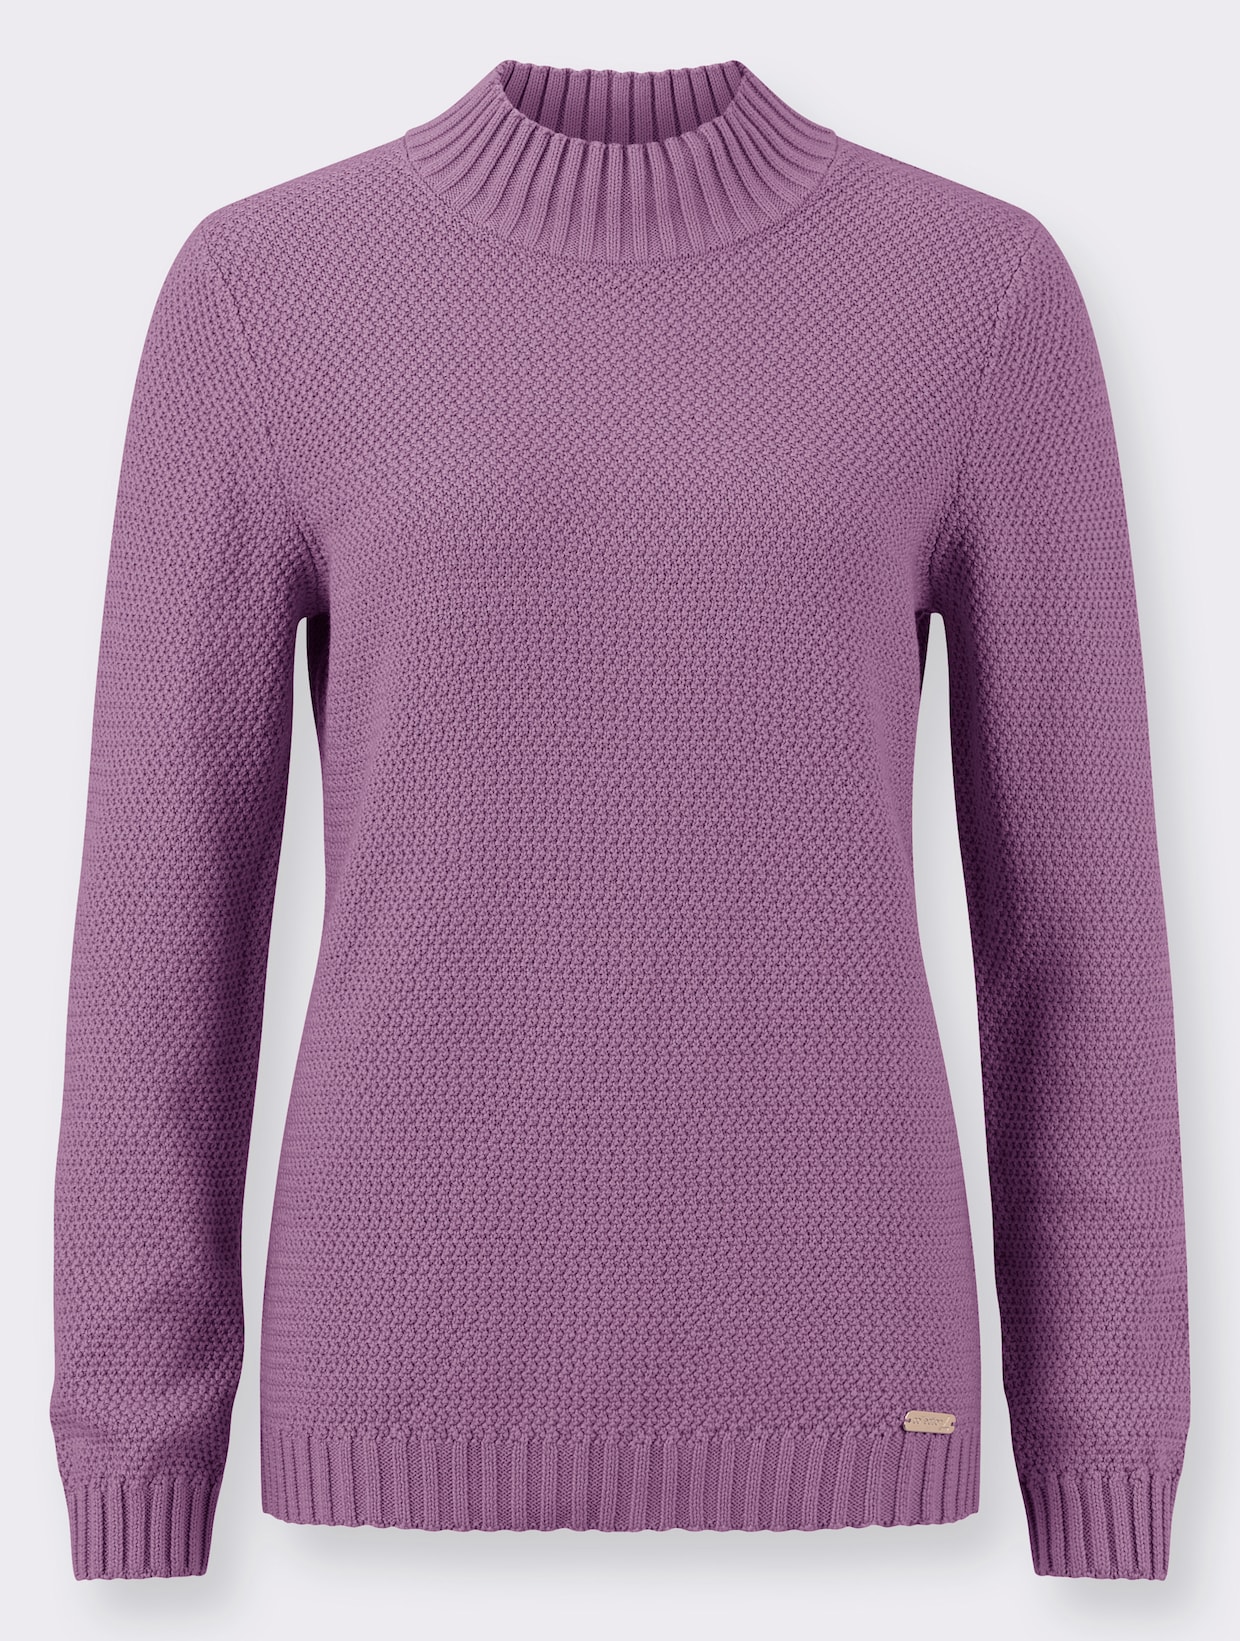 Langarm-Pullover - violett